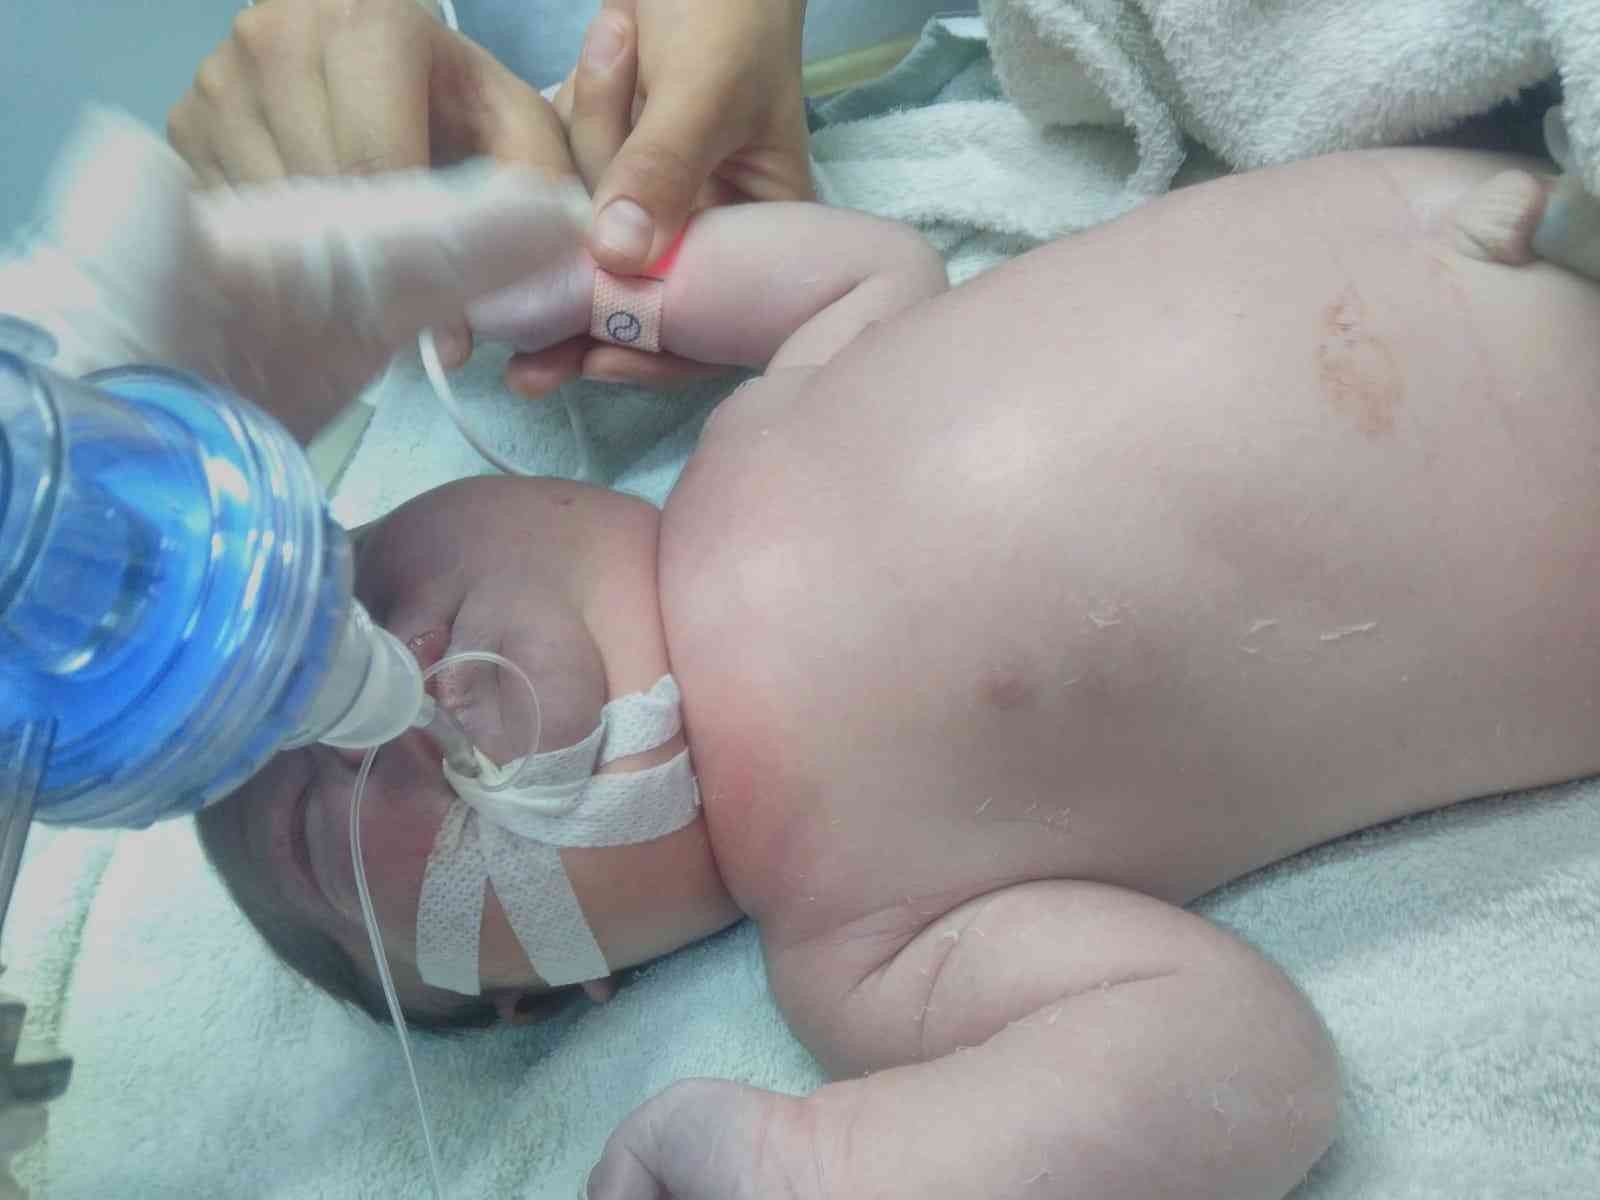 Çanakkale’nin Gökçeada ilçesinde doğuma giren bir doktorun bebeğin köprücük kemiğini kırdığı ve vücudunda morluklar oluştuğu iddia edildi ...